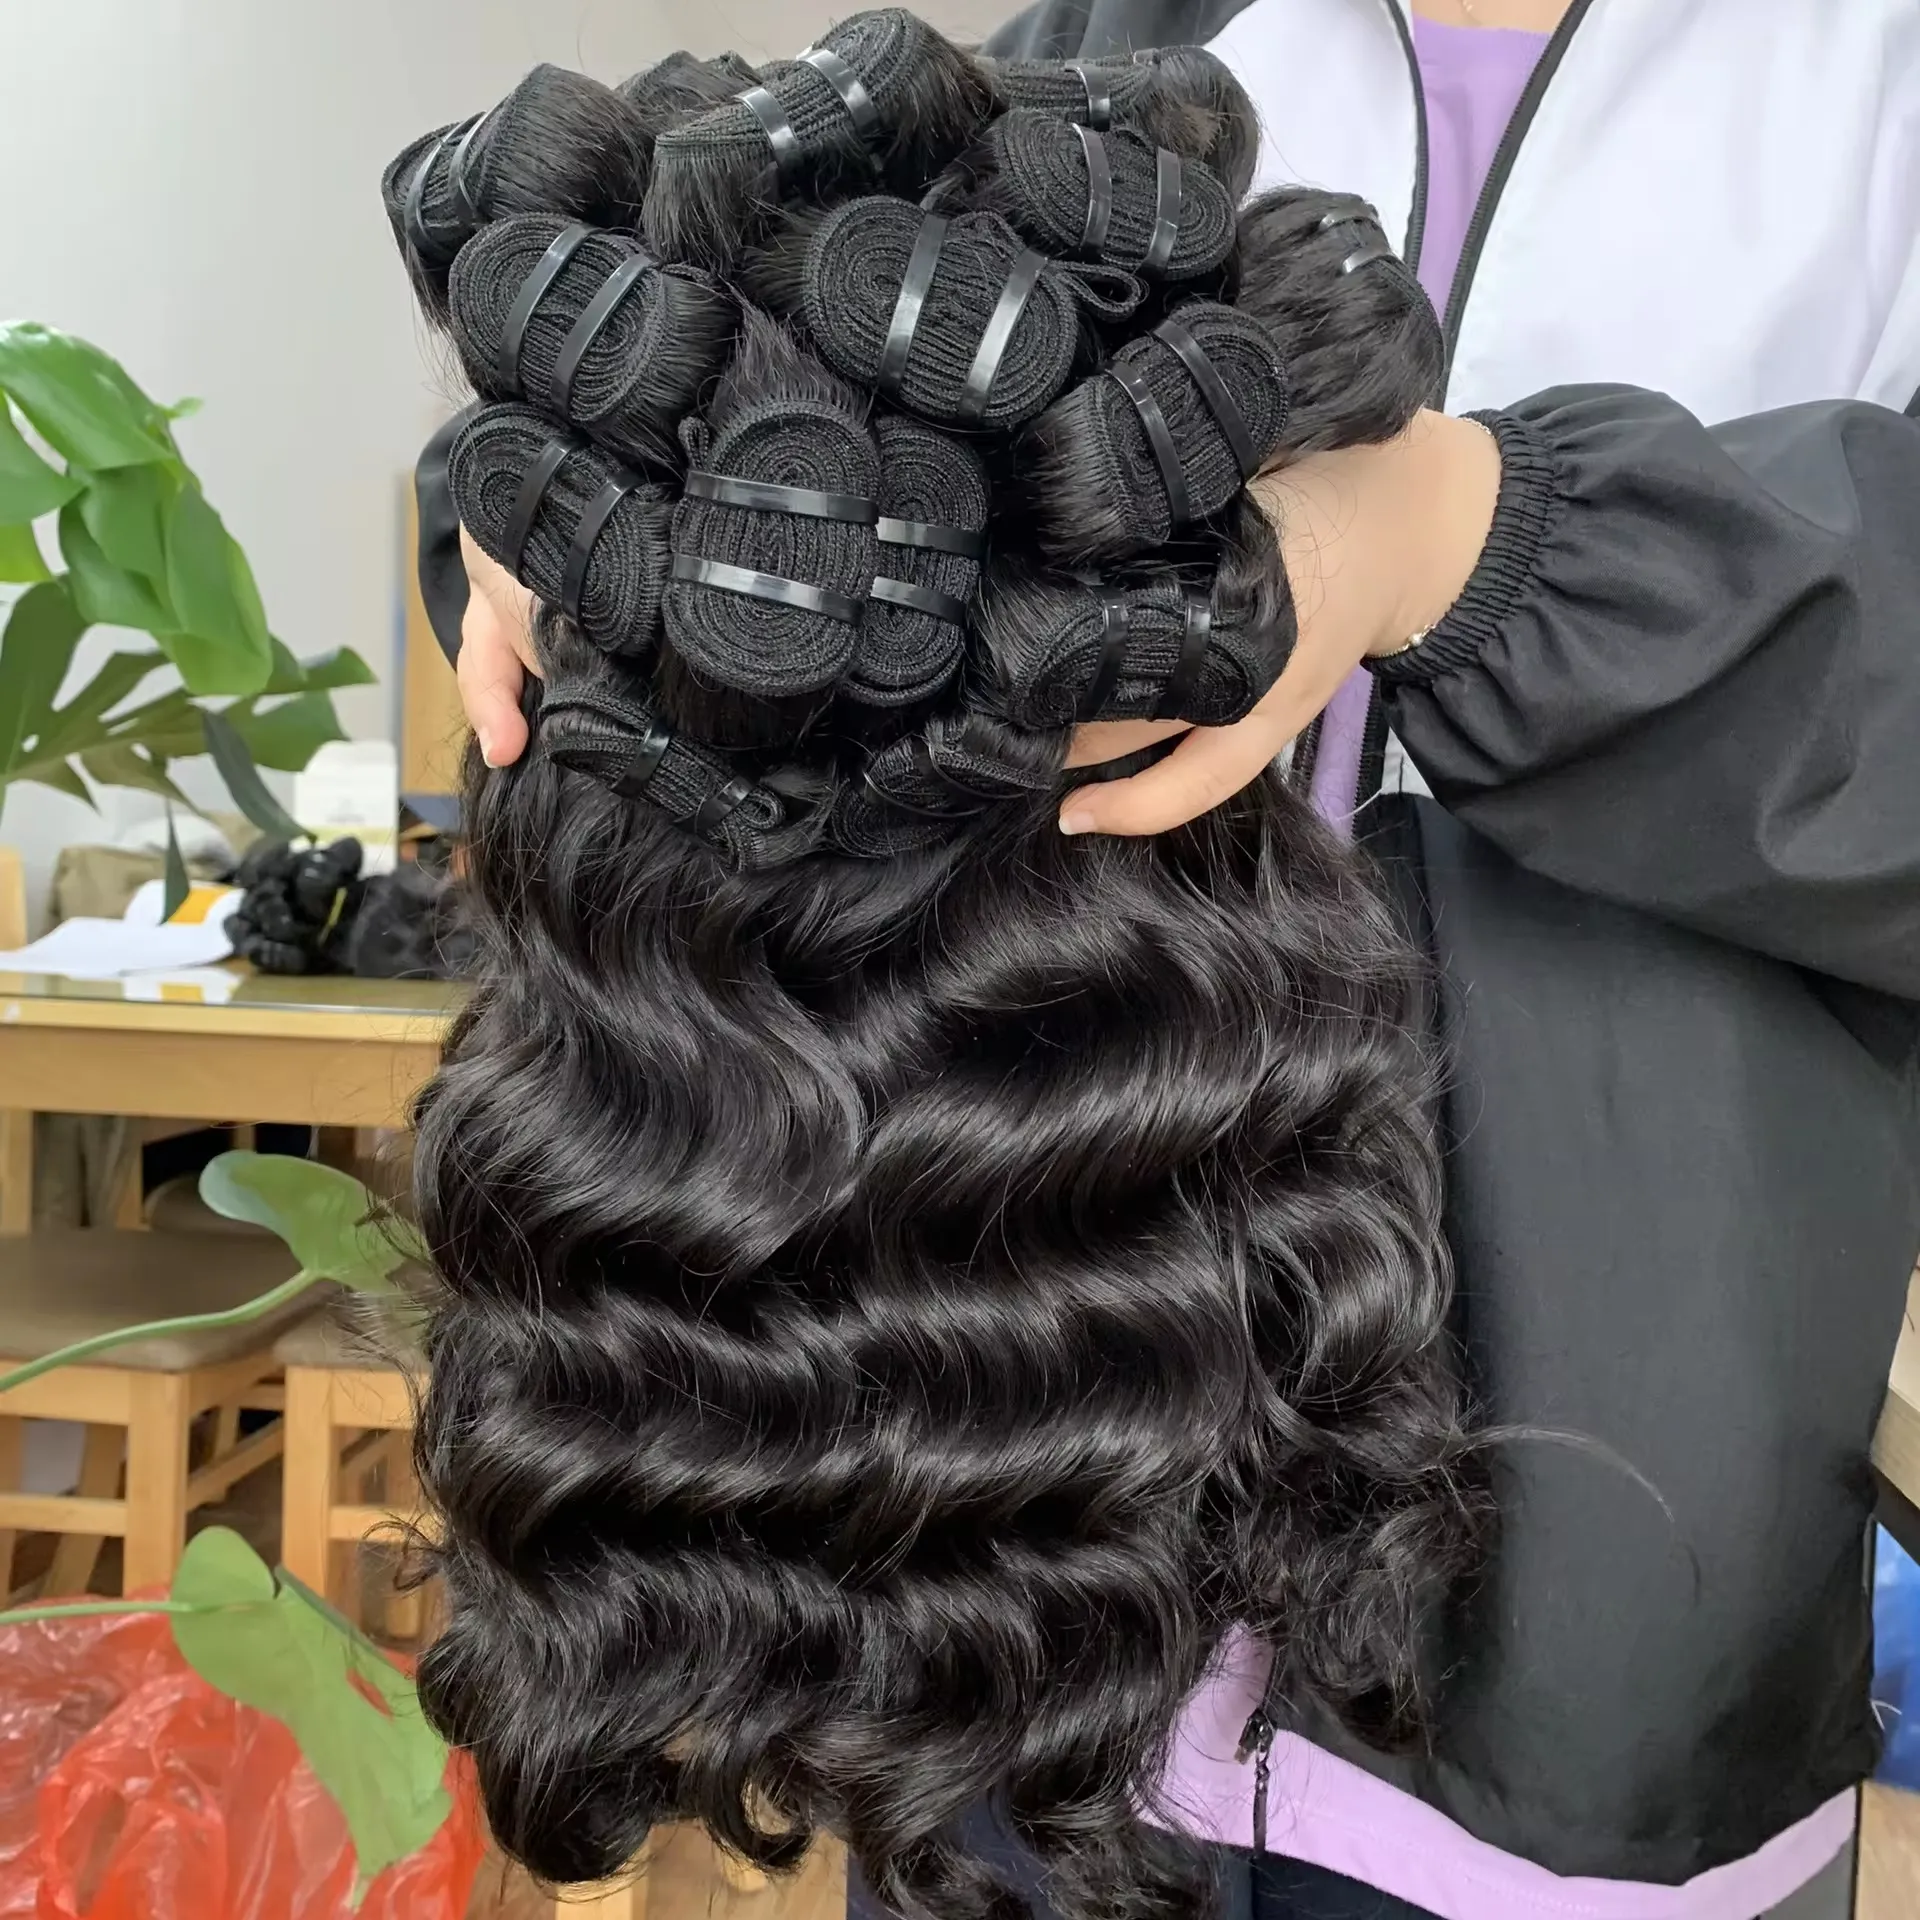 Từ Việt Nam tóc 100% chưa qua chế biến Trinh gốc tự nhiên thẳng con người tóc dệt mở rộng